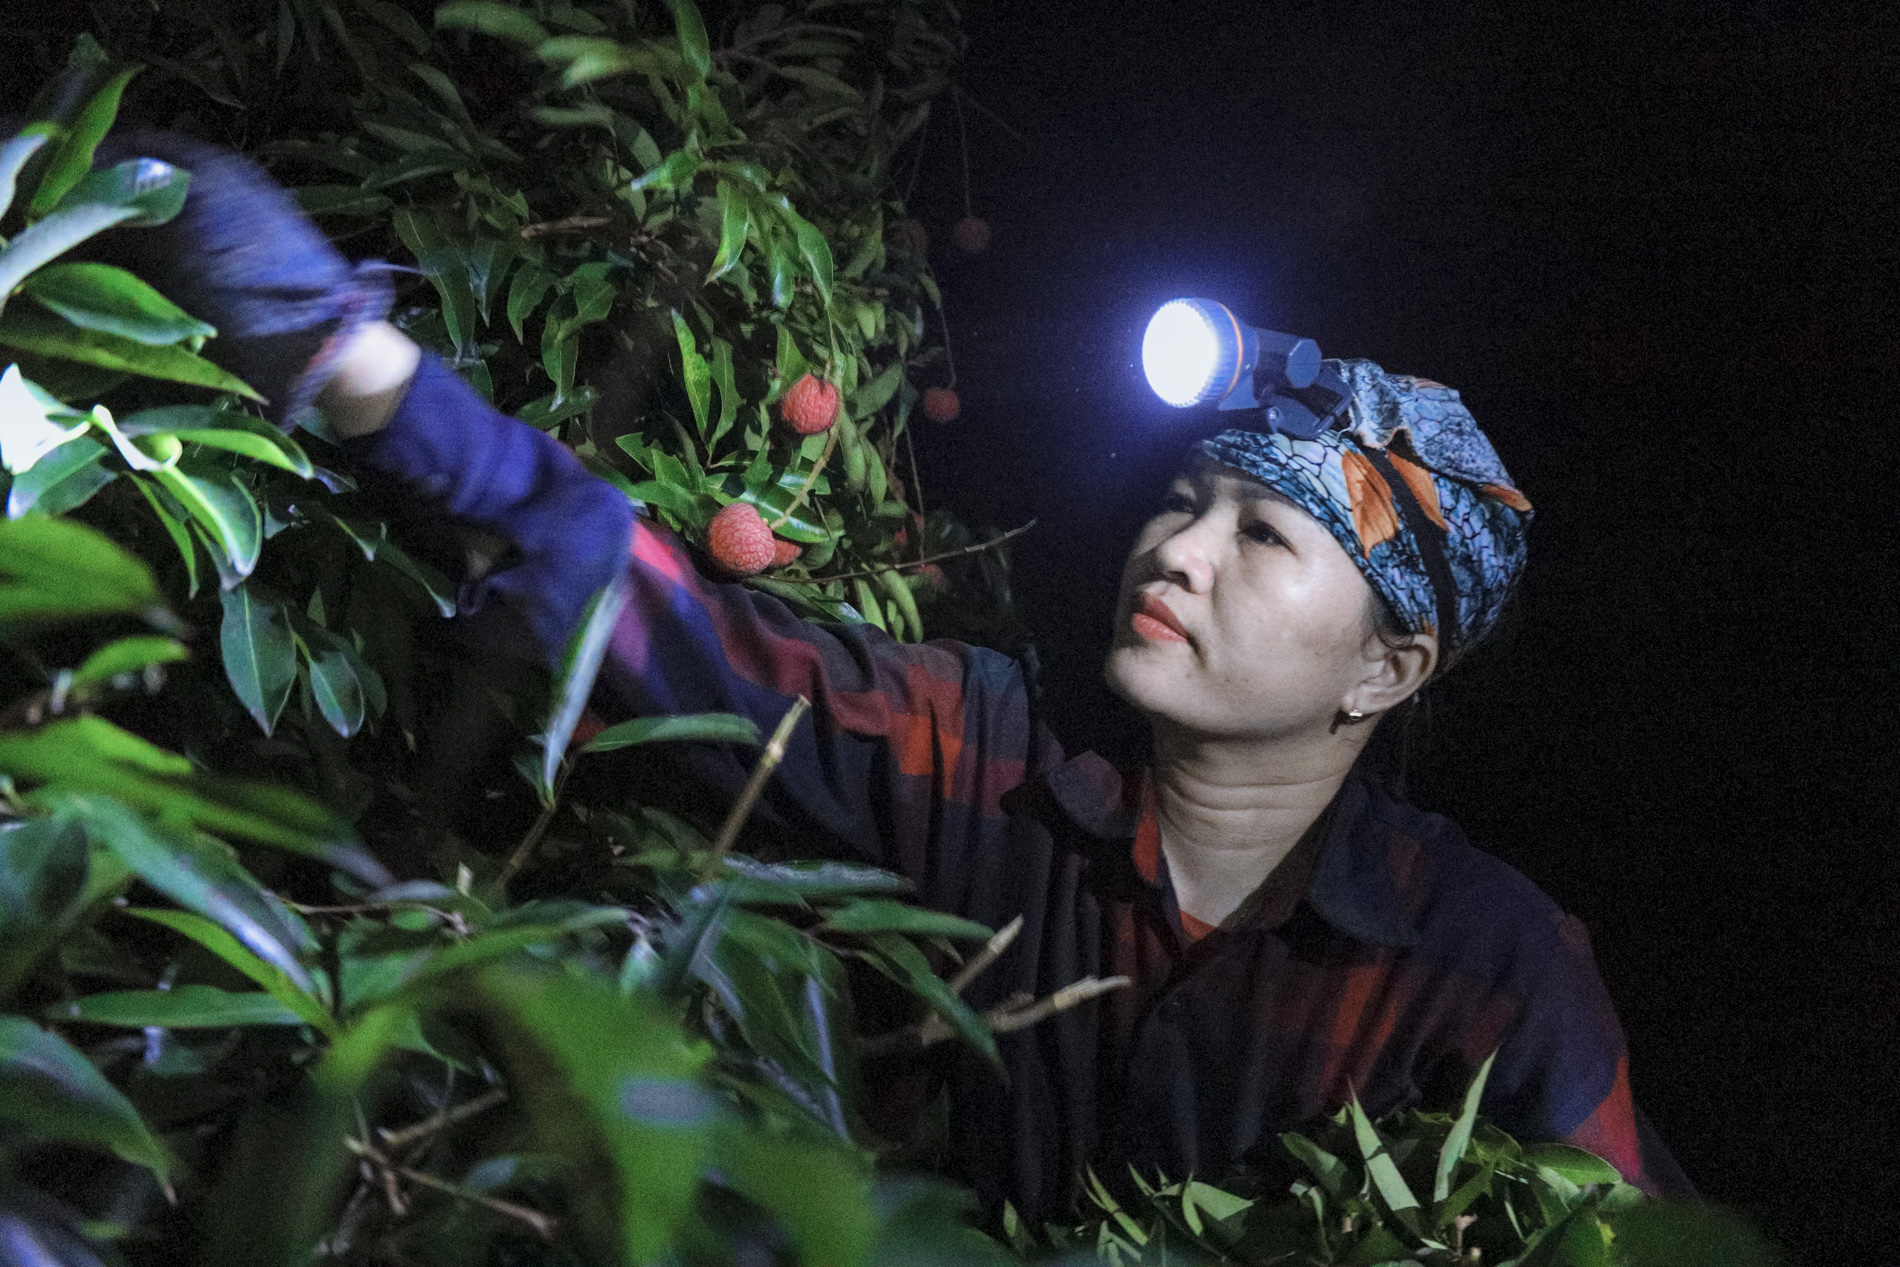 Nông dân Bắc Giang trắng đêm thu hoạch vải thiều, chở đi bán từ tờ mờ sáng - Ảnh 3.